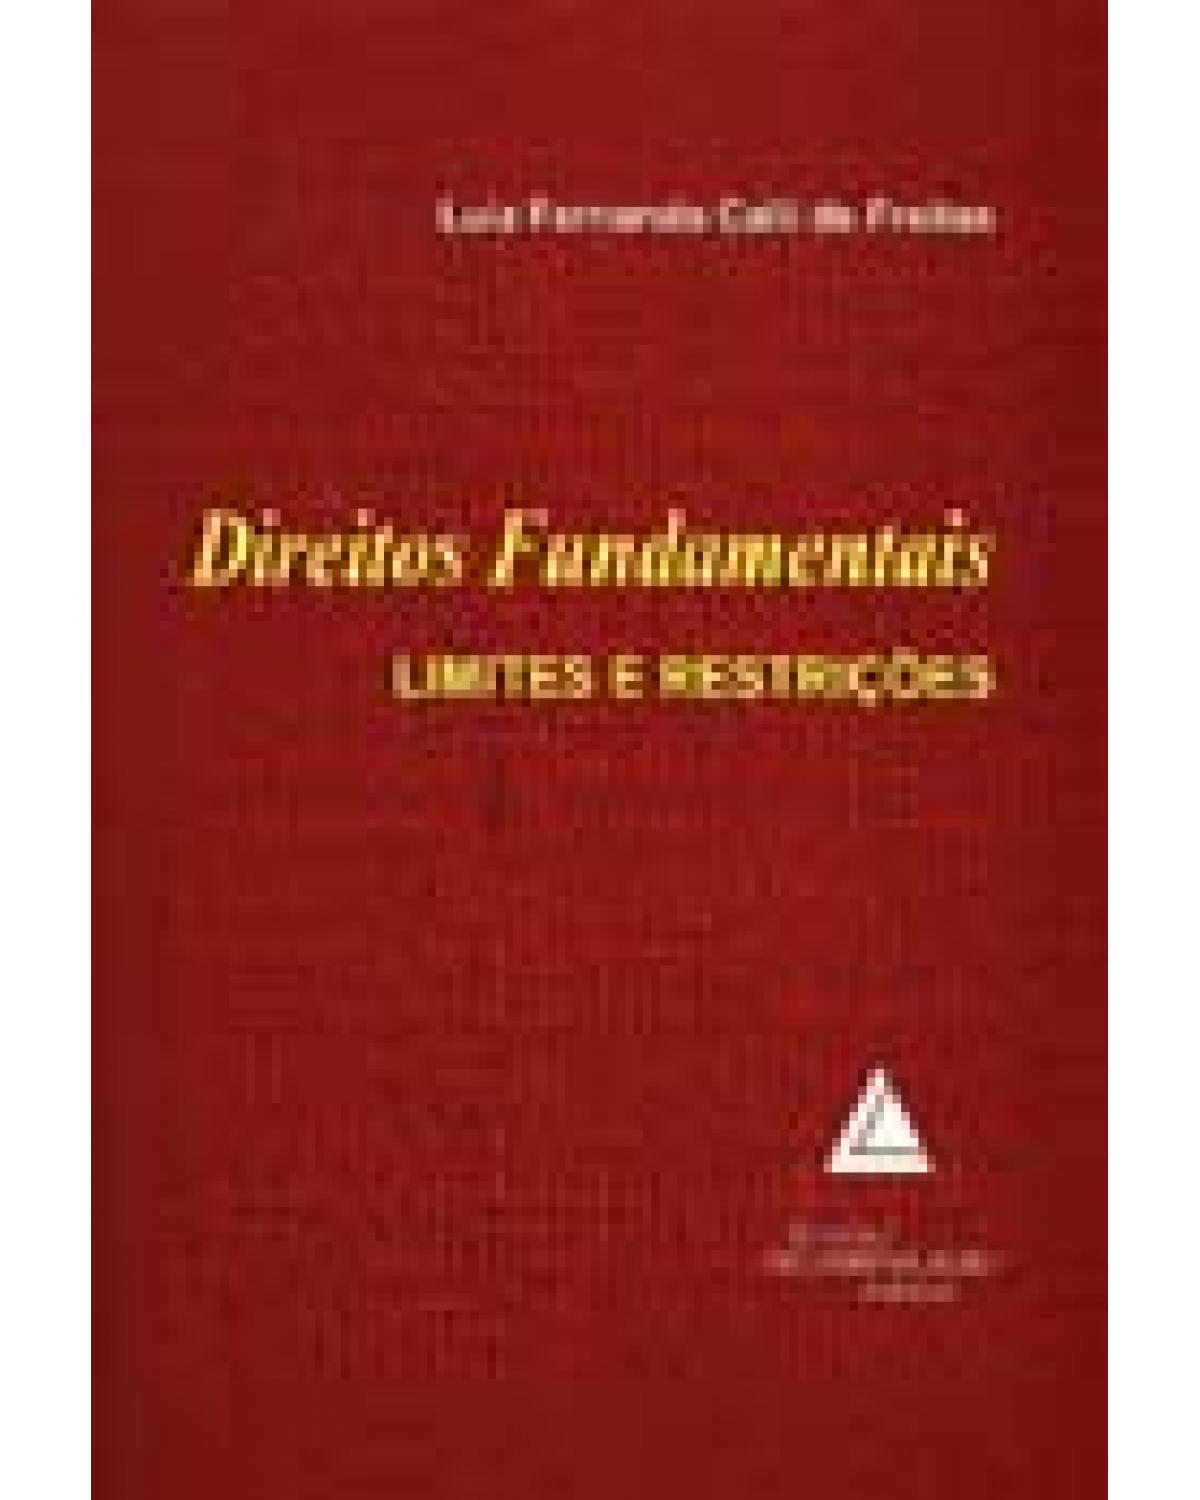 Direitos fundamentais: Limites e restrições - 1ª Edição | 2007